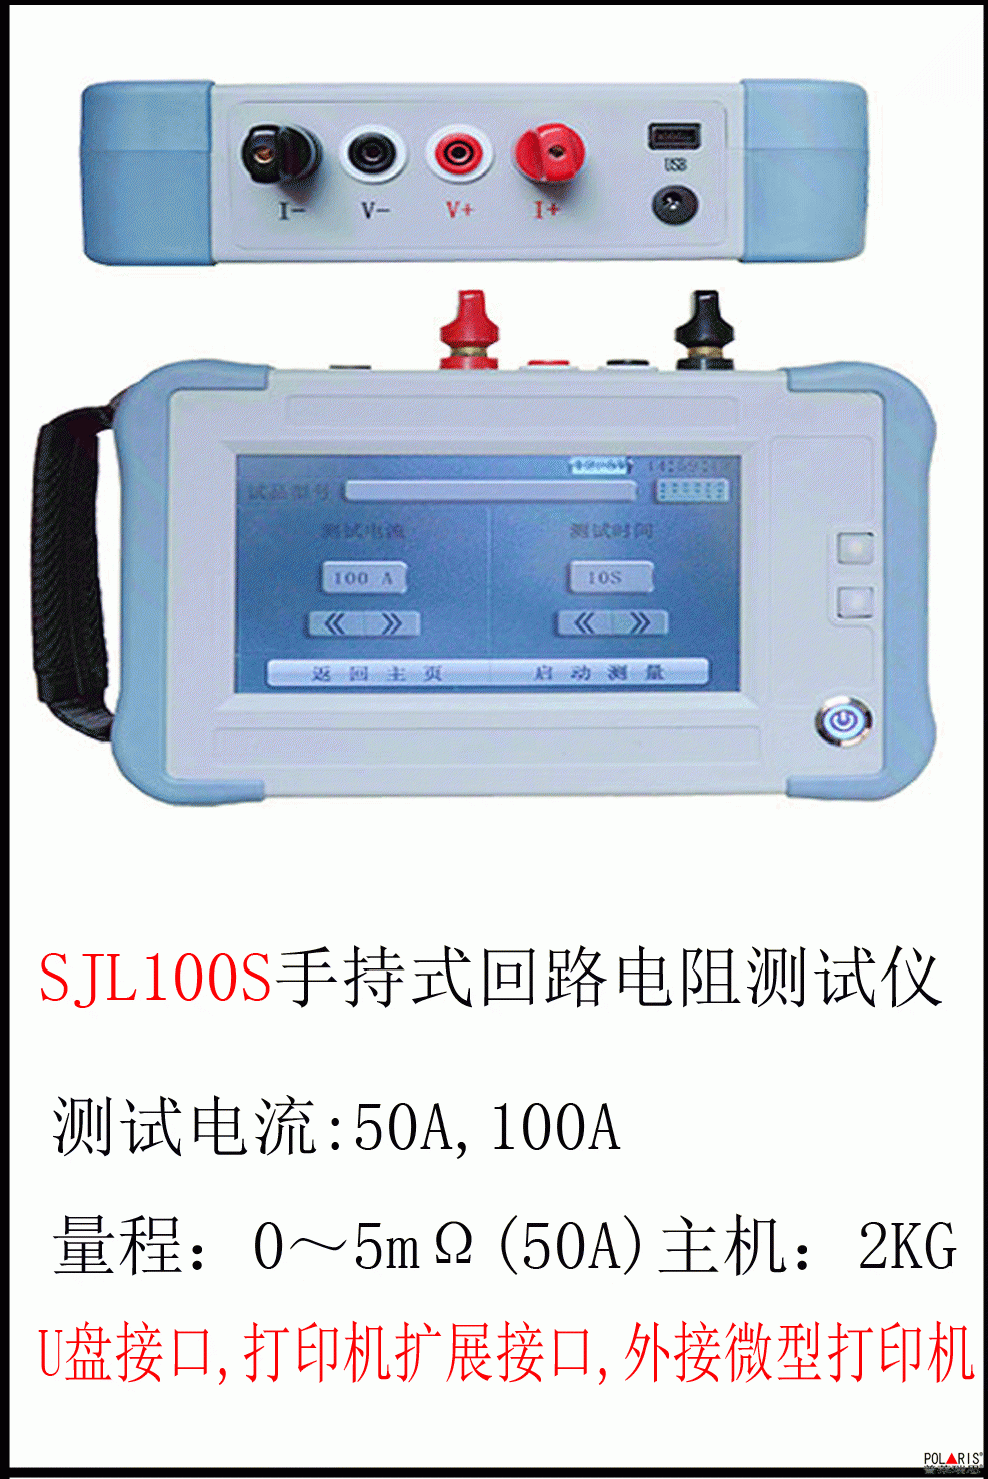 SJL100S 手 持 式 回 路 电 阻 测 试 仪 